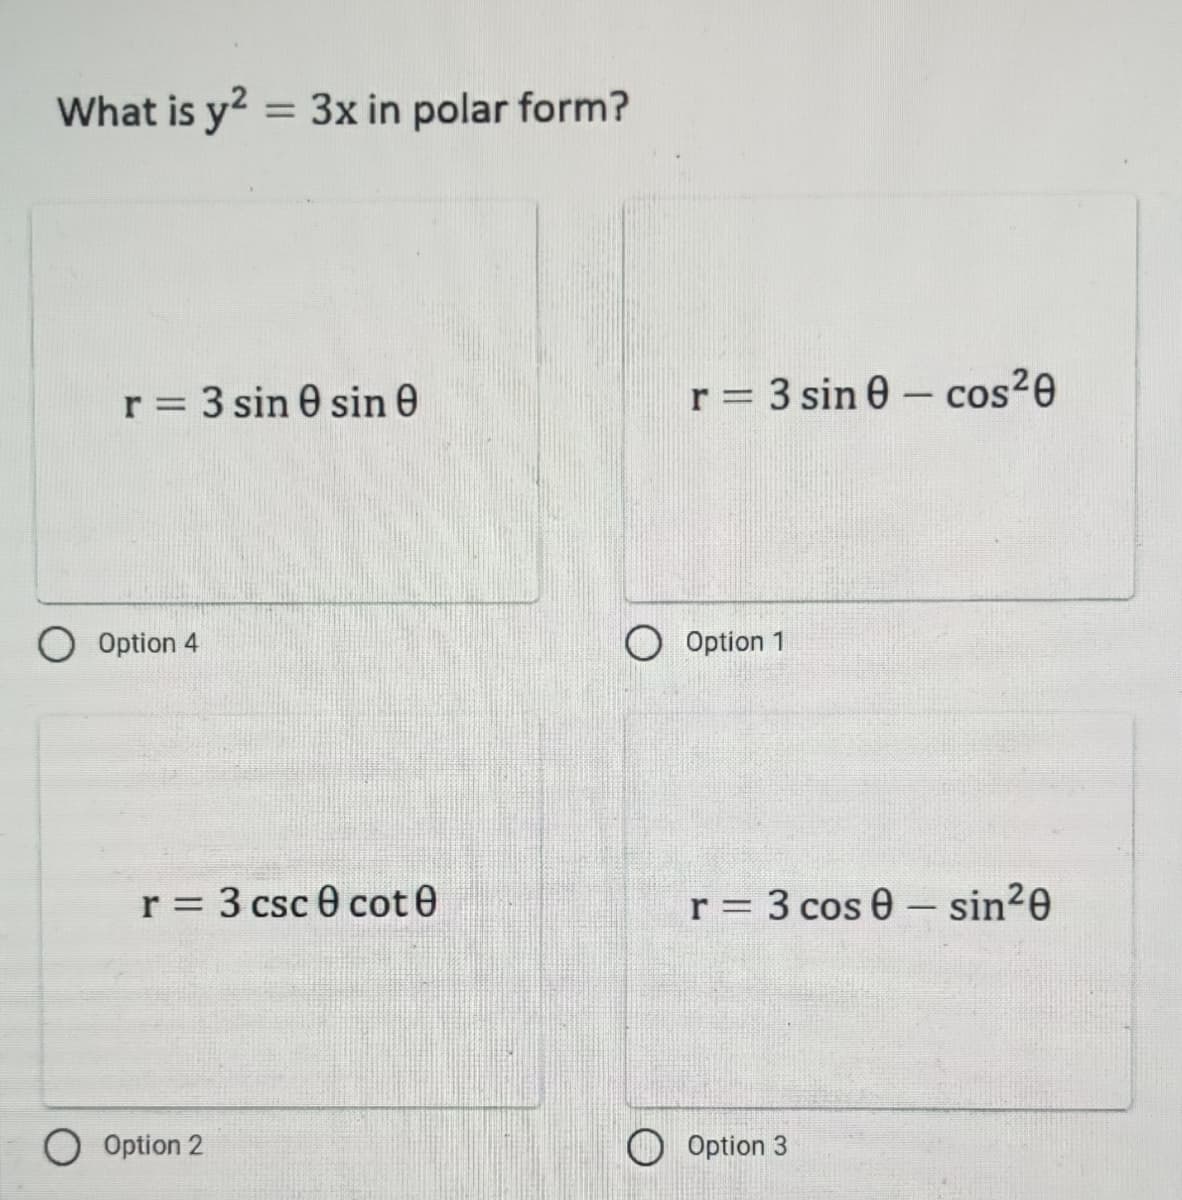 What is y2 = 3x in polar form?
r = 3 sin 0 sin 0
Option 4
r = 3 csc 0 cote
O Option 2
r = 3 sin 0 cos²0
r = 3 cos 0 - sin²0
Option 3
O Option 1